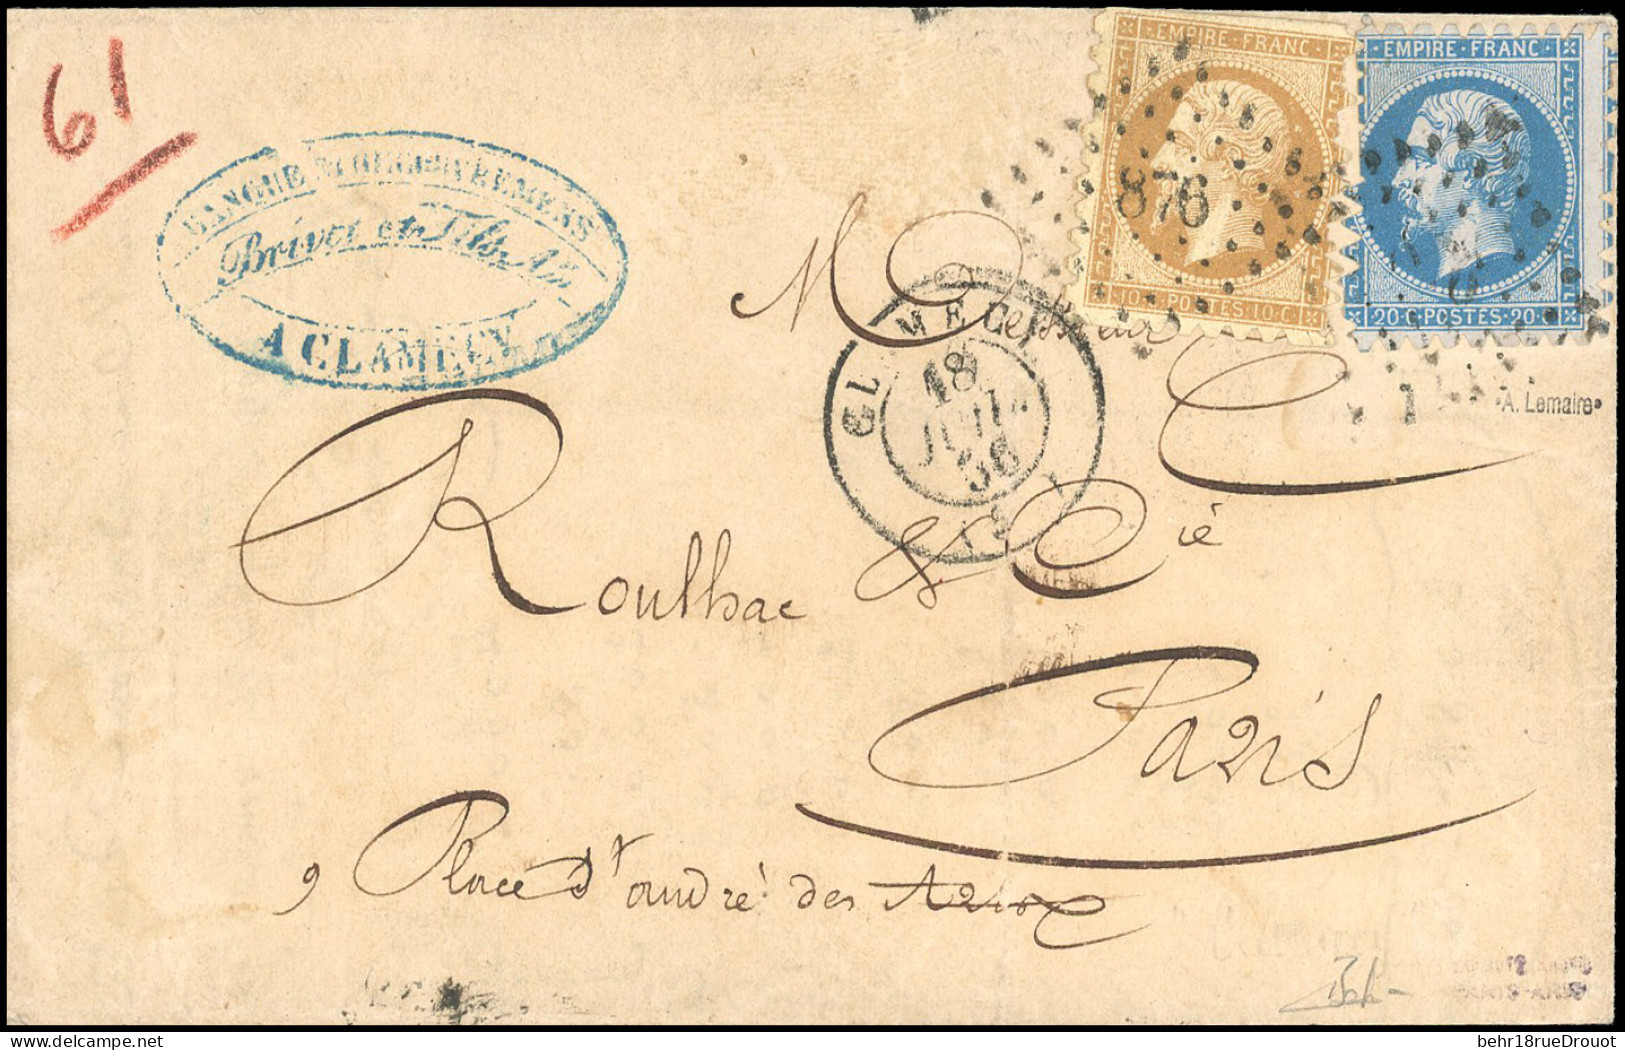 Obl. 13A + 14 - 10c. Bistre + 20c. Bleu, Avec Piquage De Clamecy, Obl. PC 876 S/lettre Frappée Du CàD De CLAMECY Du 18 J - 1853-1860 Napoléon III